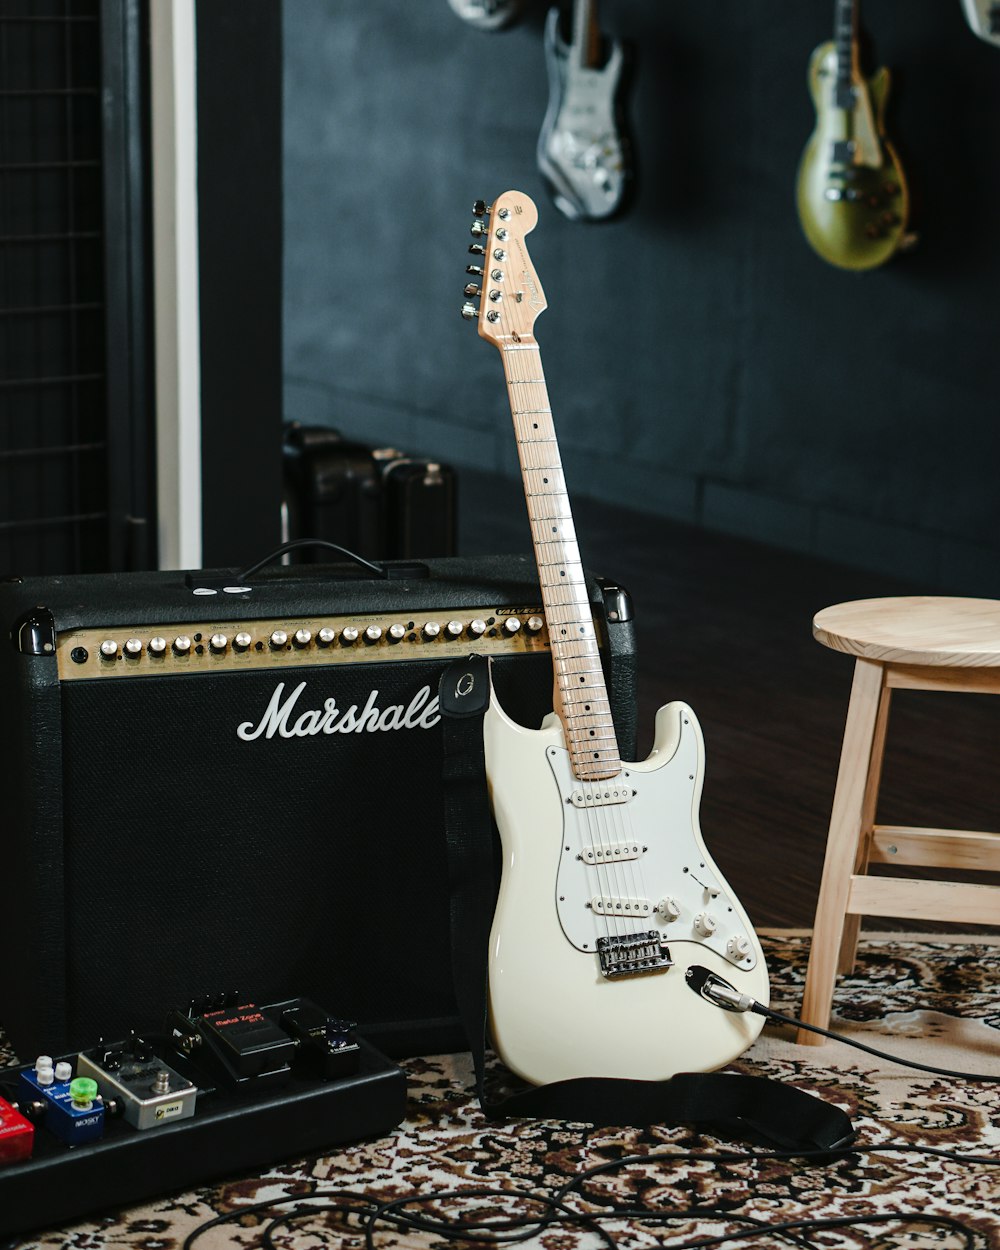 Chitarra elettrica Stratocaster bianca e nera su amplificatore per chitarra nero